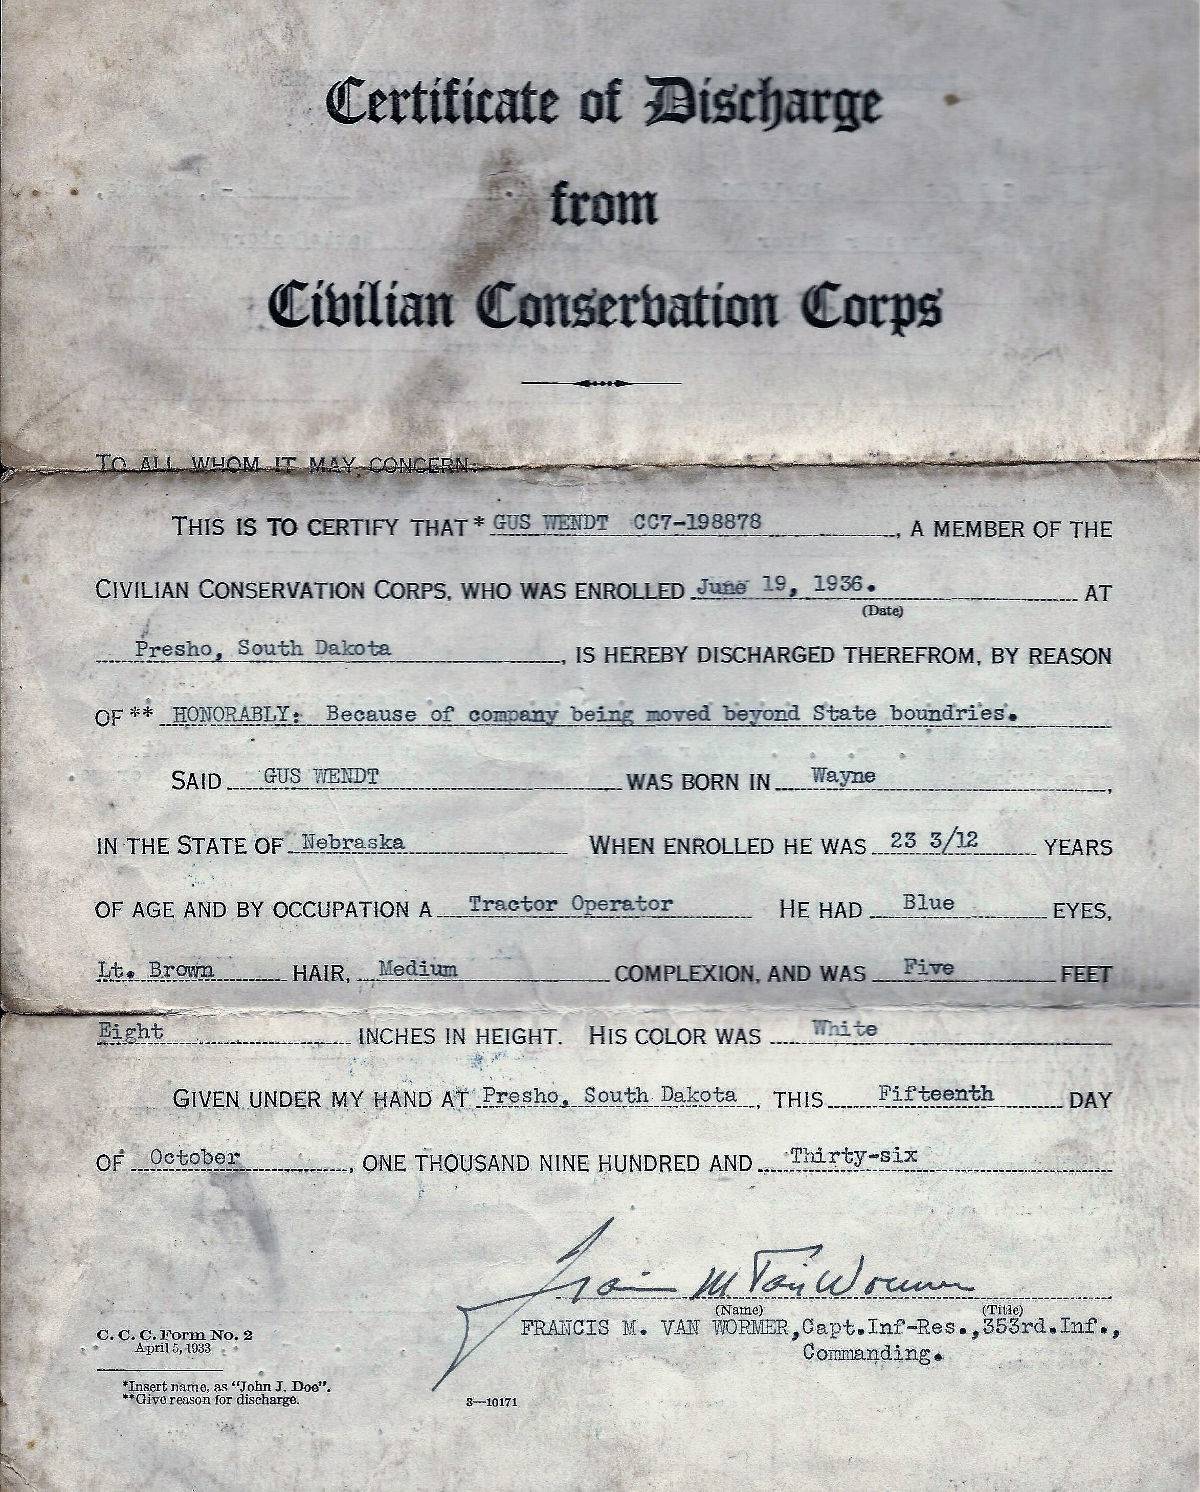 Gus Wendt Certificate of Discharge